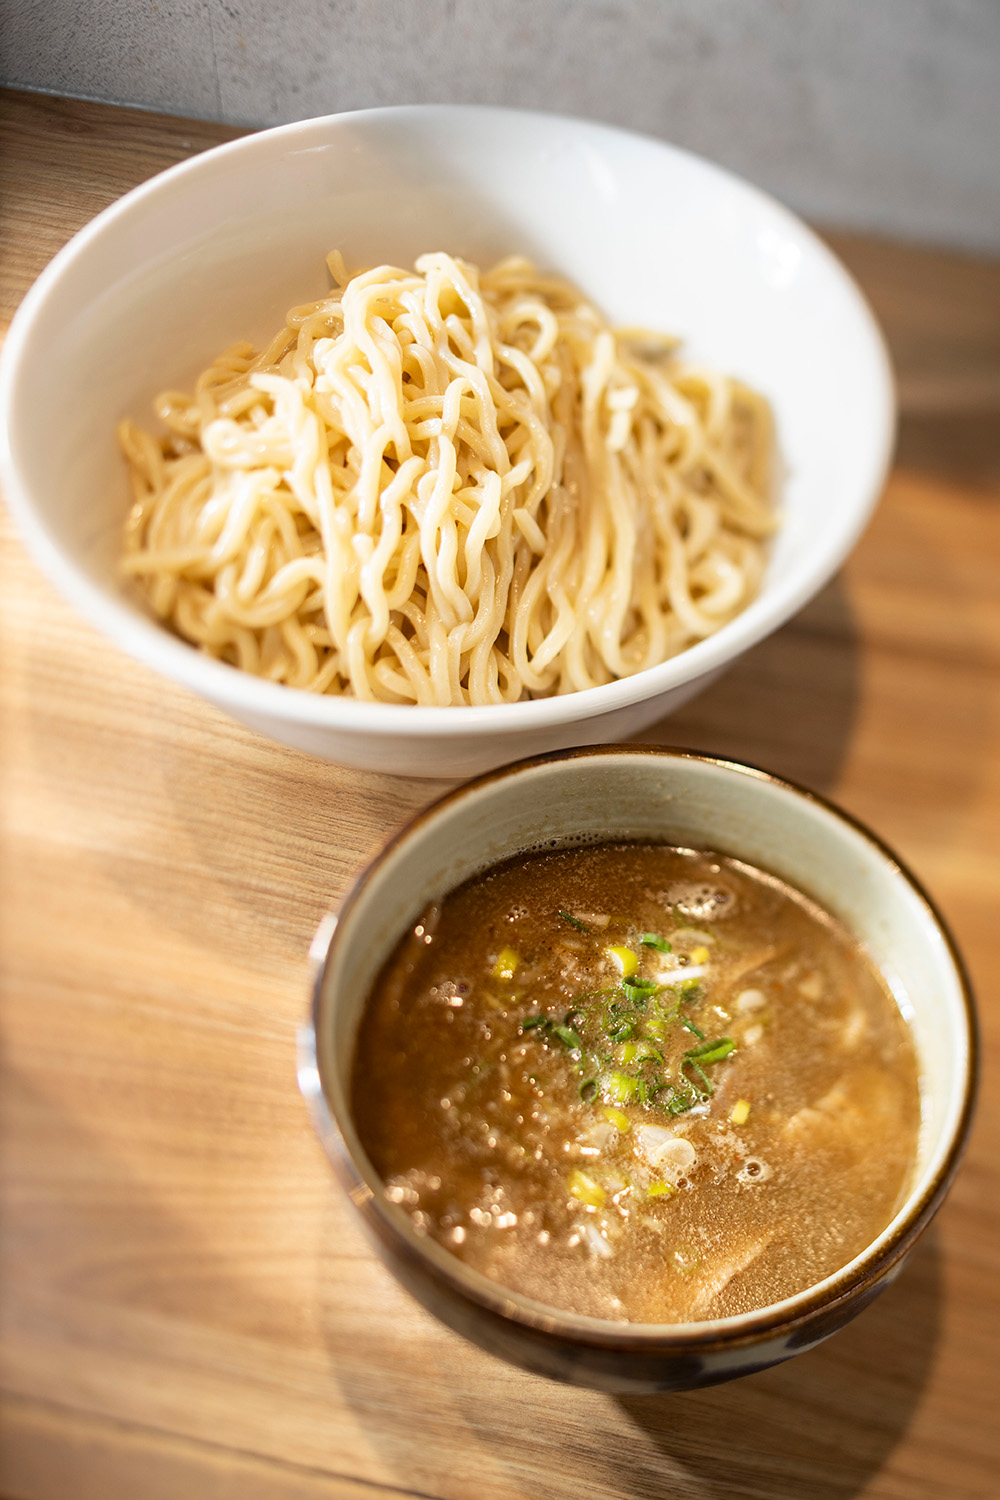 つけめん1020円も人気。濃厚なスープに隠し味として甘酢を加えることで、主役の麺をしっかり引き立てている。